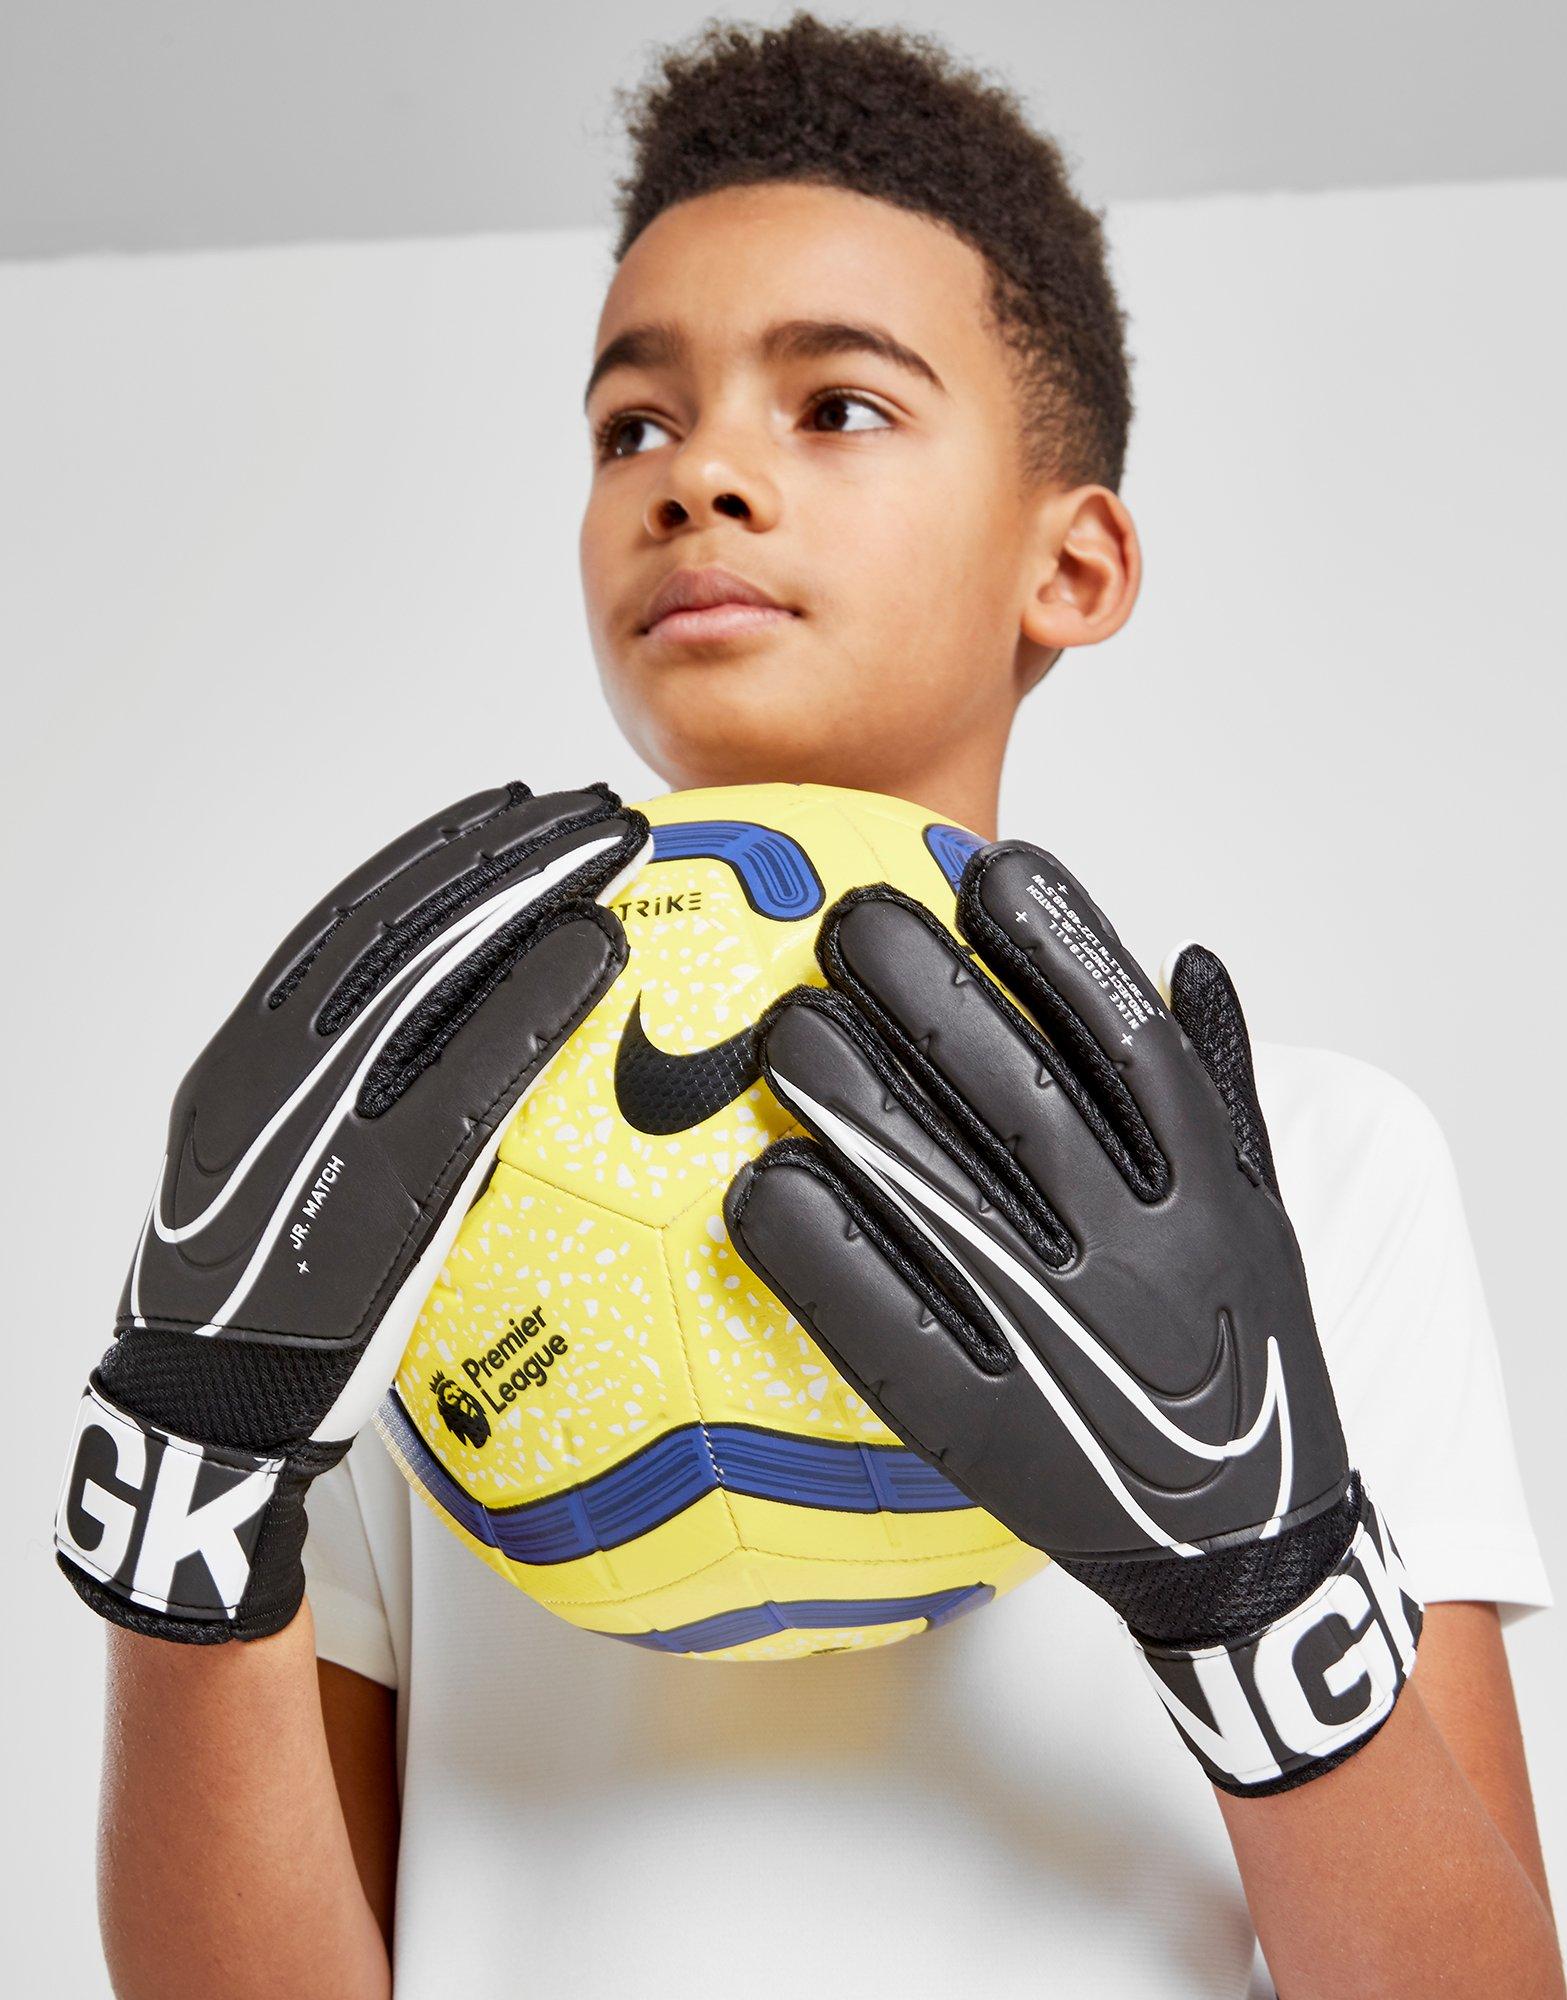 nike goalkeeper gloves junior